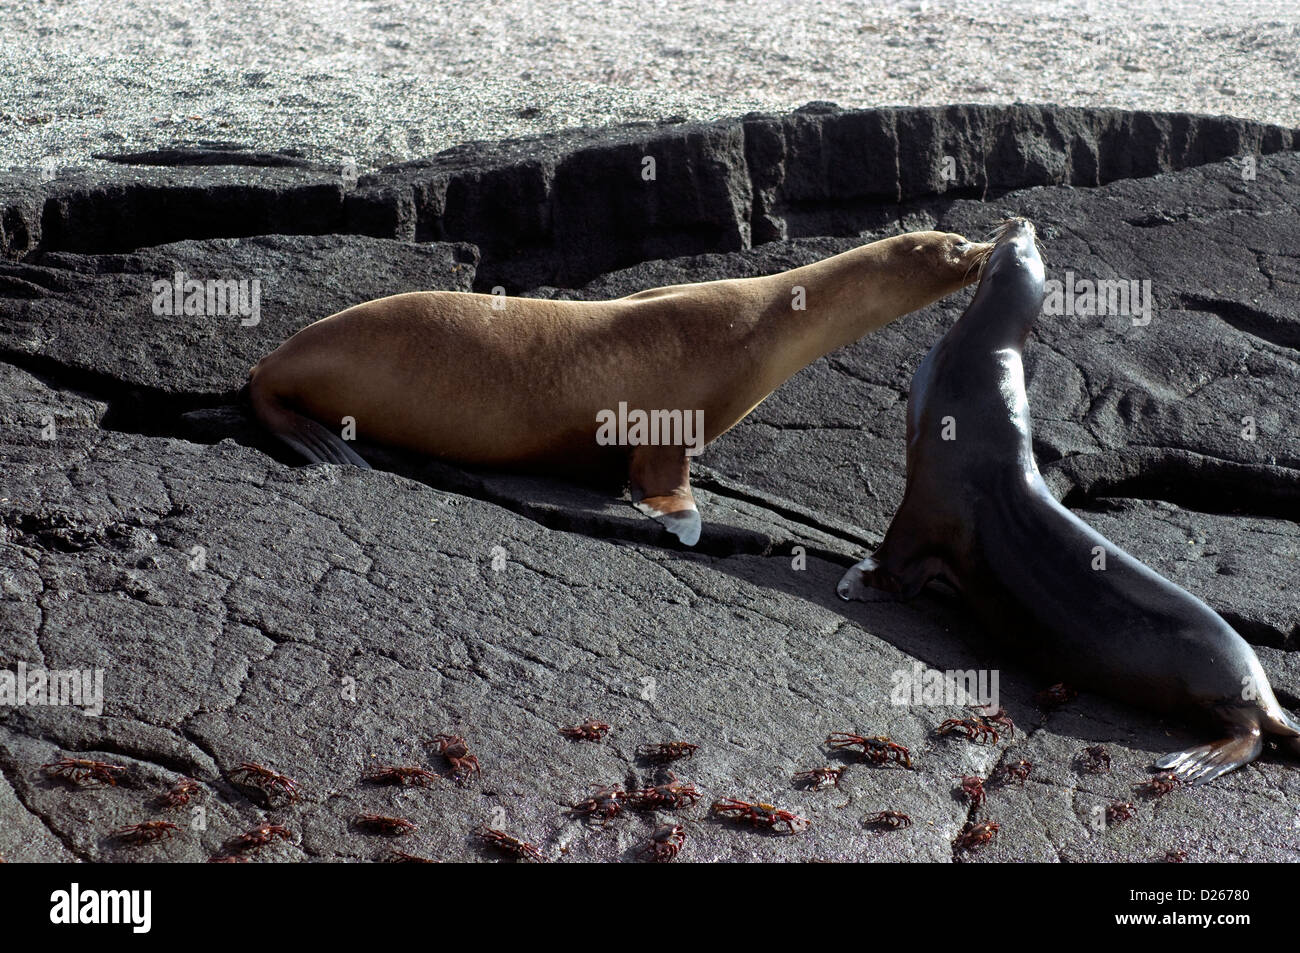 Come sally lightfoot granchi orologio, due leoni di mare apparentemente exchange affettuosi saluti protetto delle isole Galapagos Foto Stock